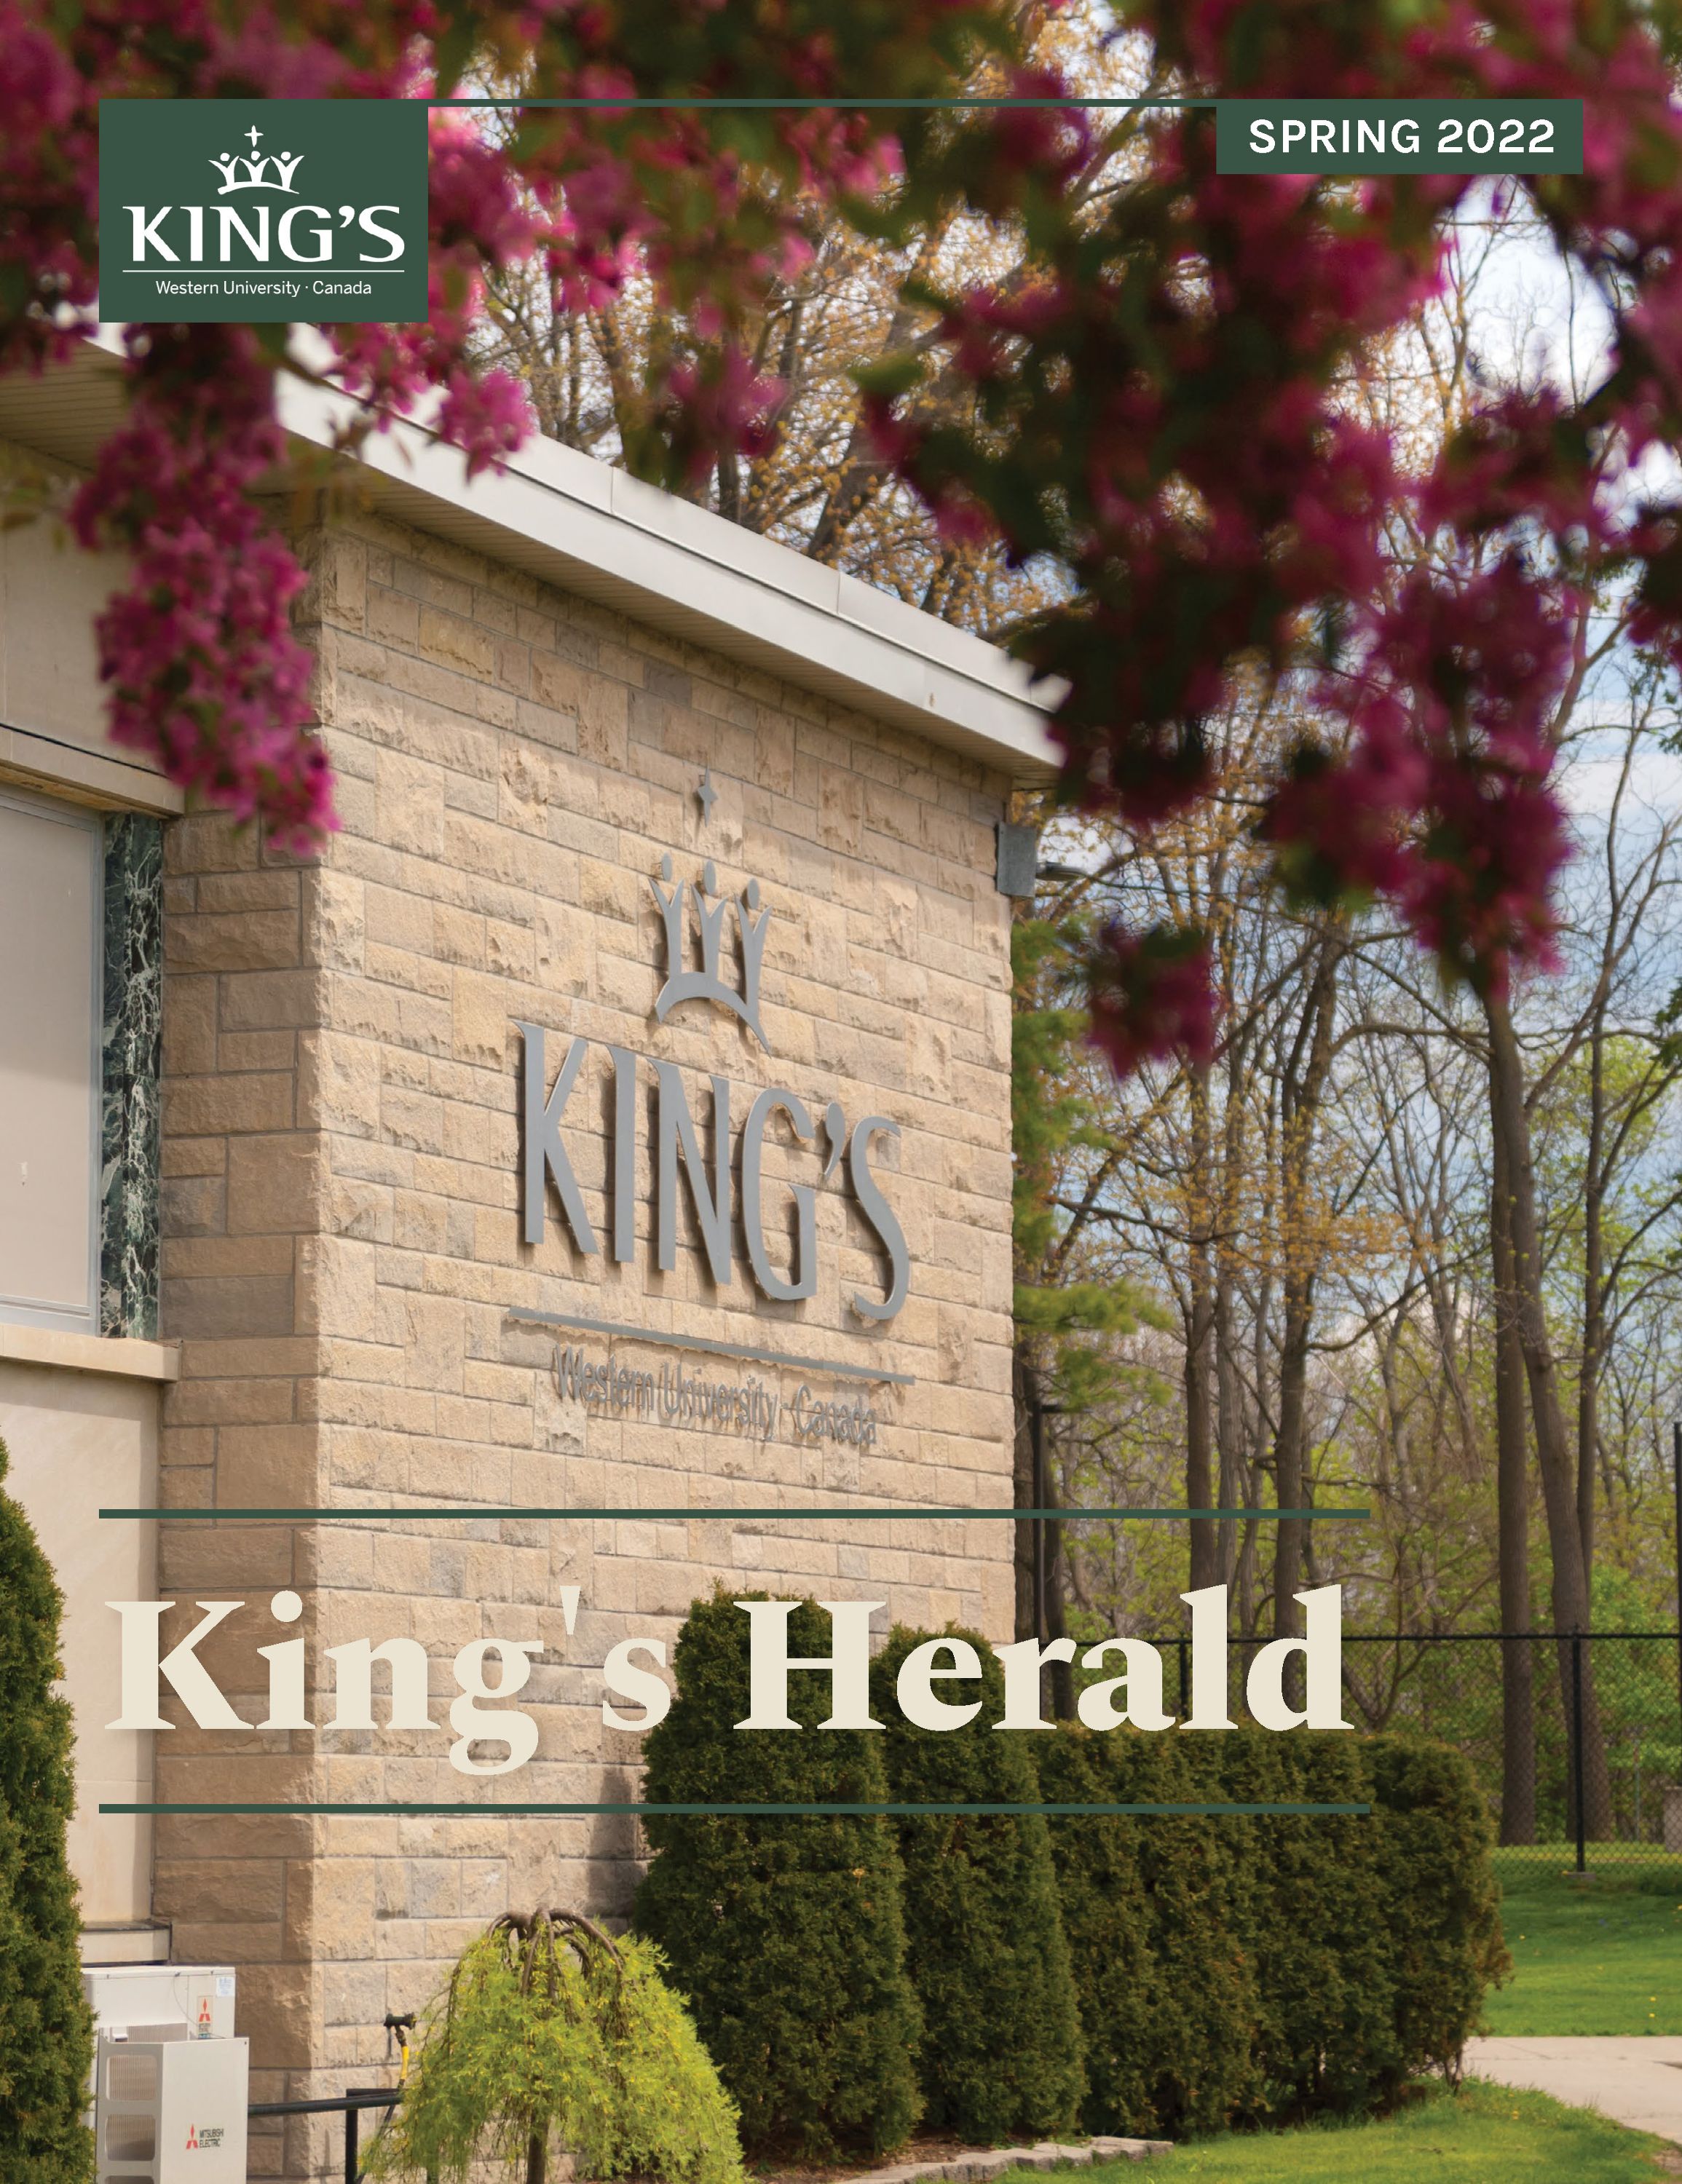 (image: King's Herald Spring 2022)